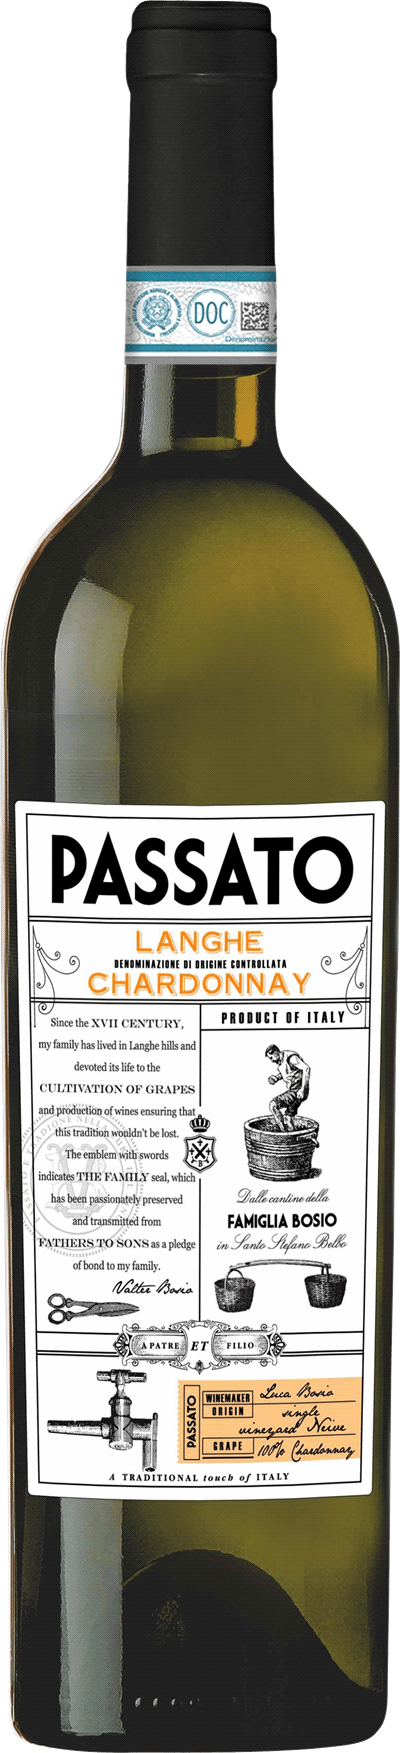 Bosio Passato Langhe Chardonnay